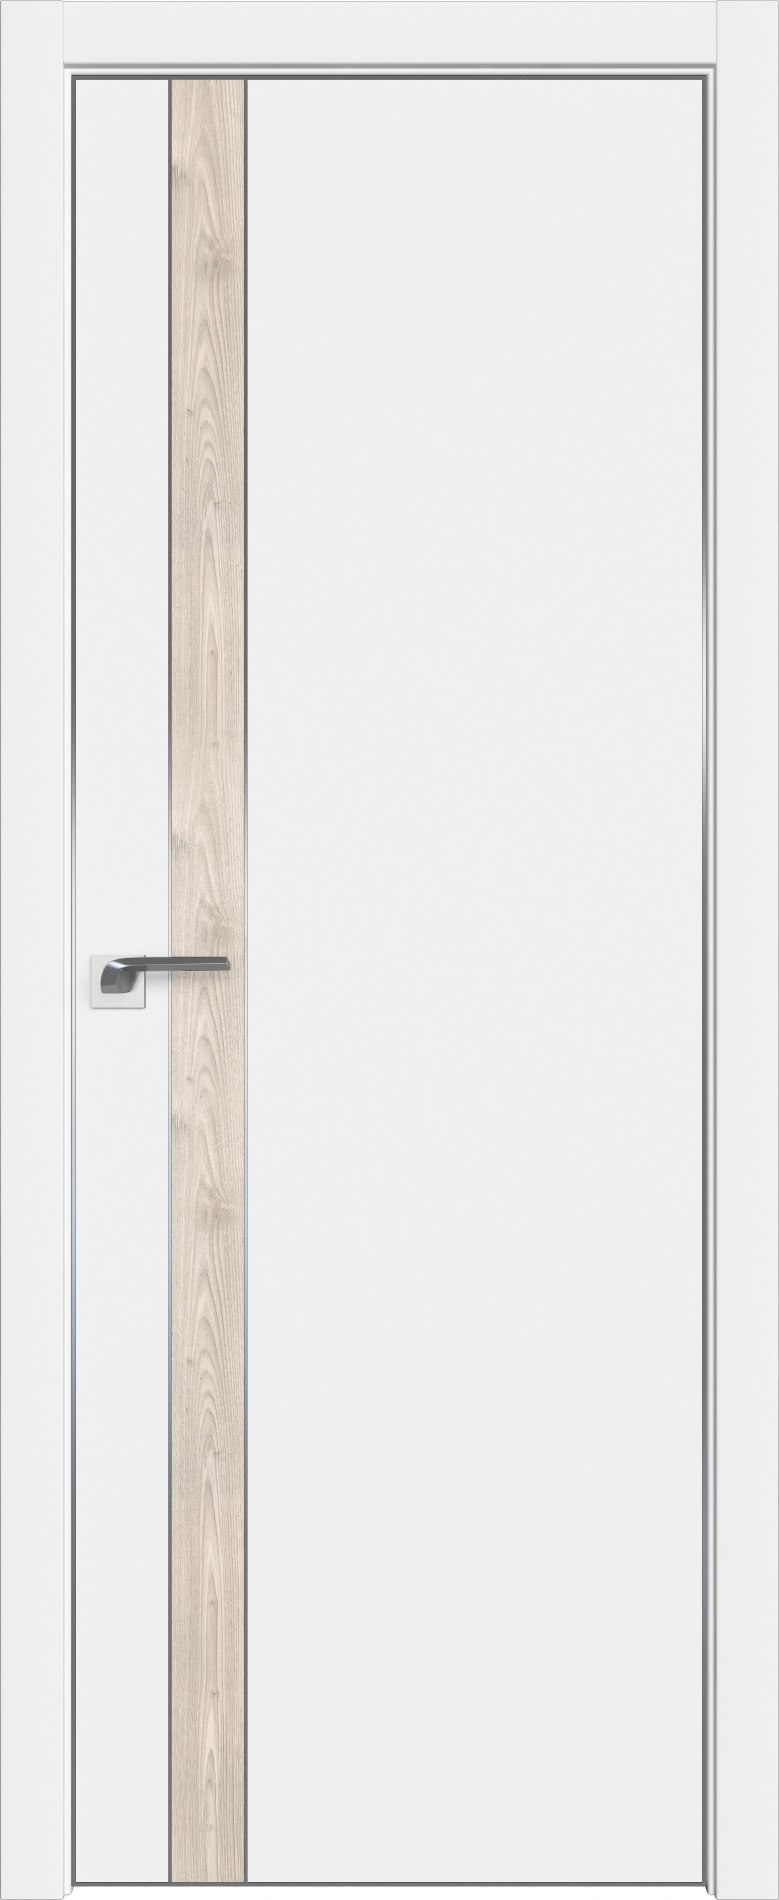 межкомнатные двери  Profil Doors 106SMK ABS белый матовый